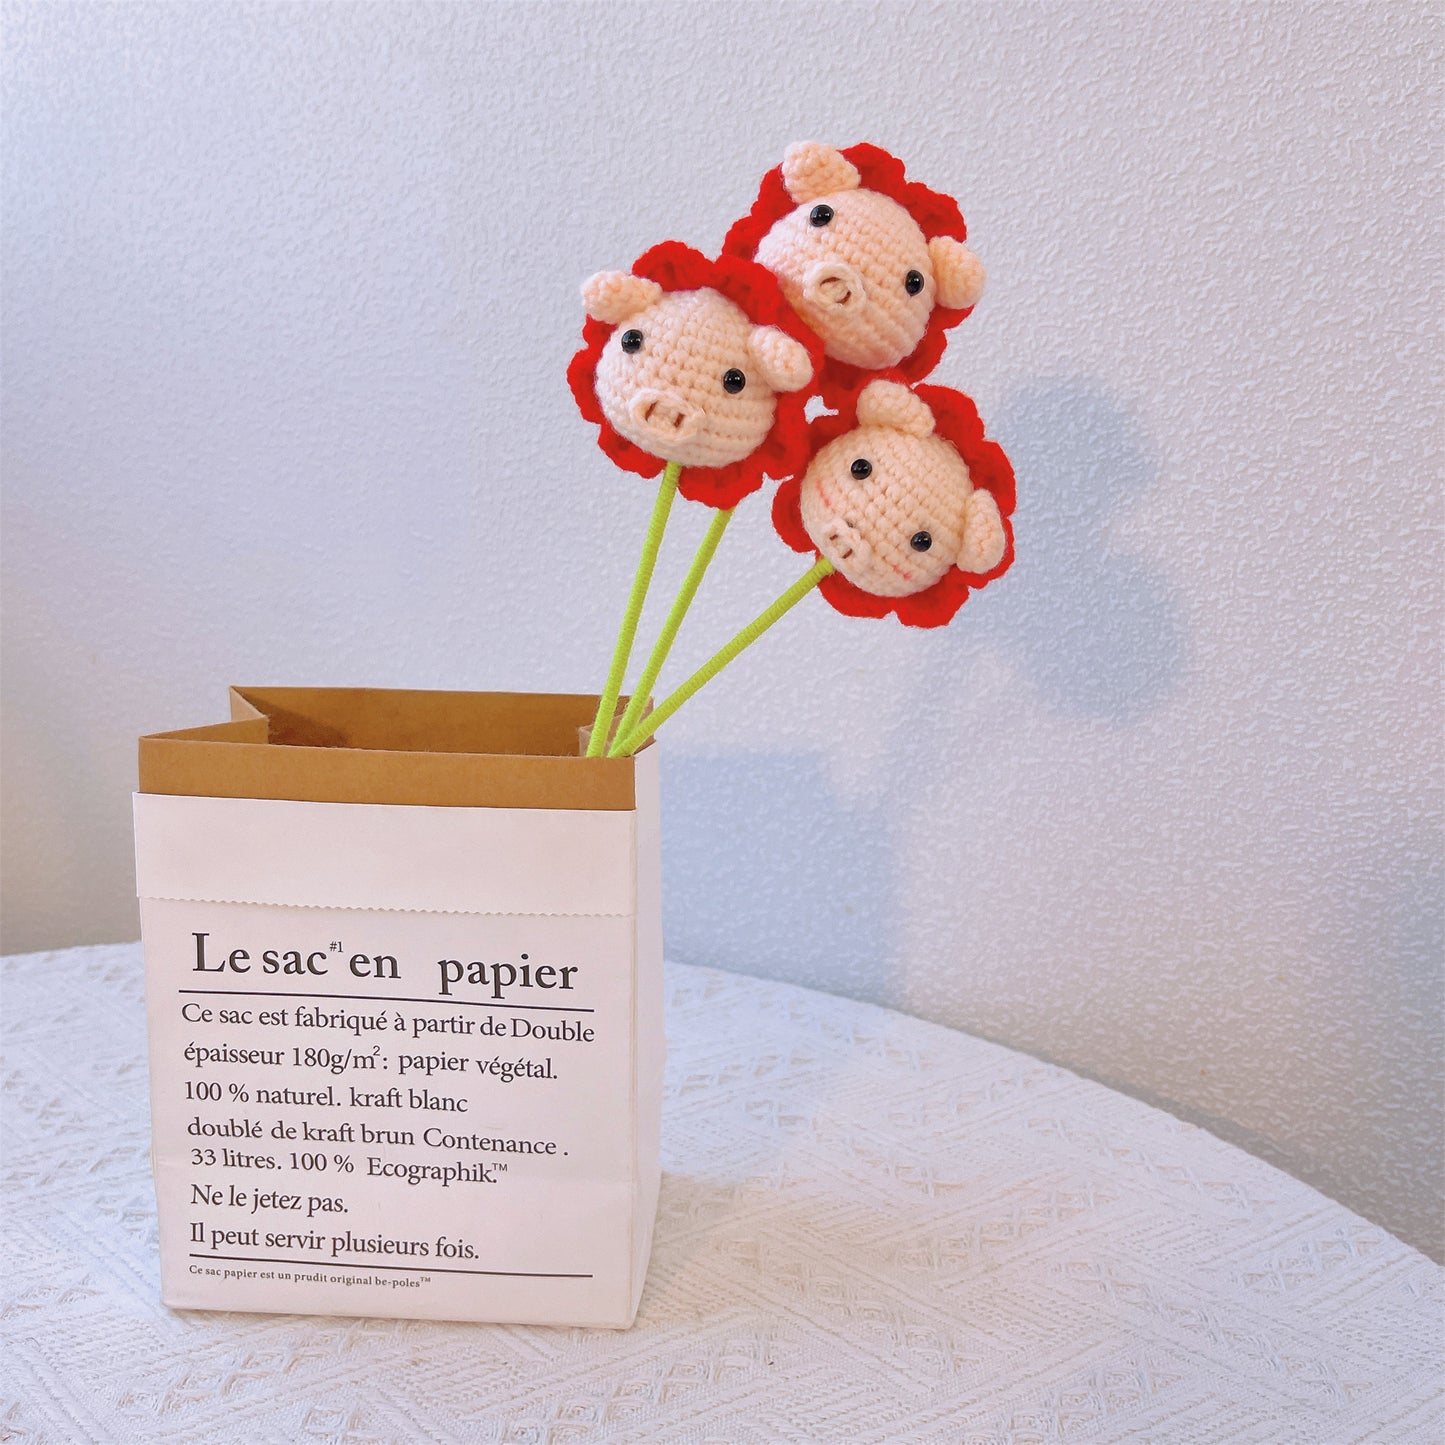 Piggy Bloom : Tête de cochon mignonne au crochet fabriquée à la main avec finition en forme de fleur pour un décor de jardin ludique